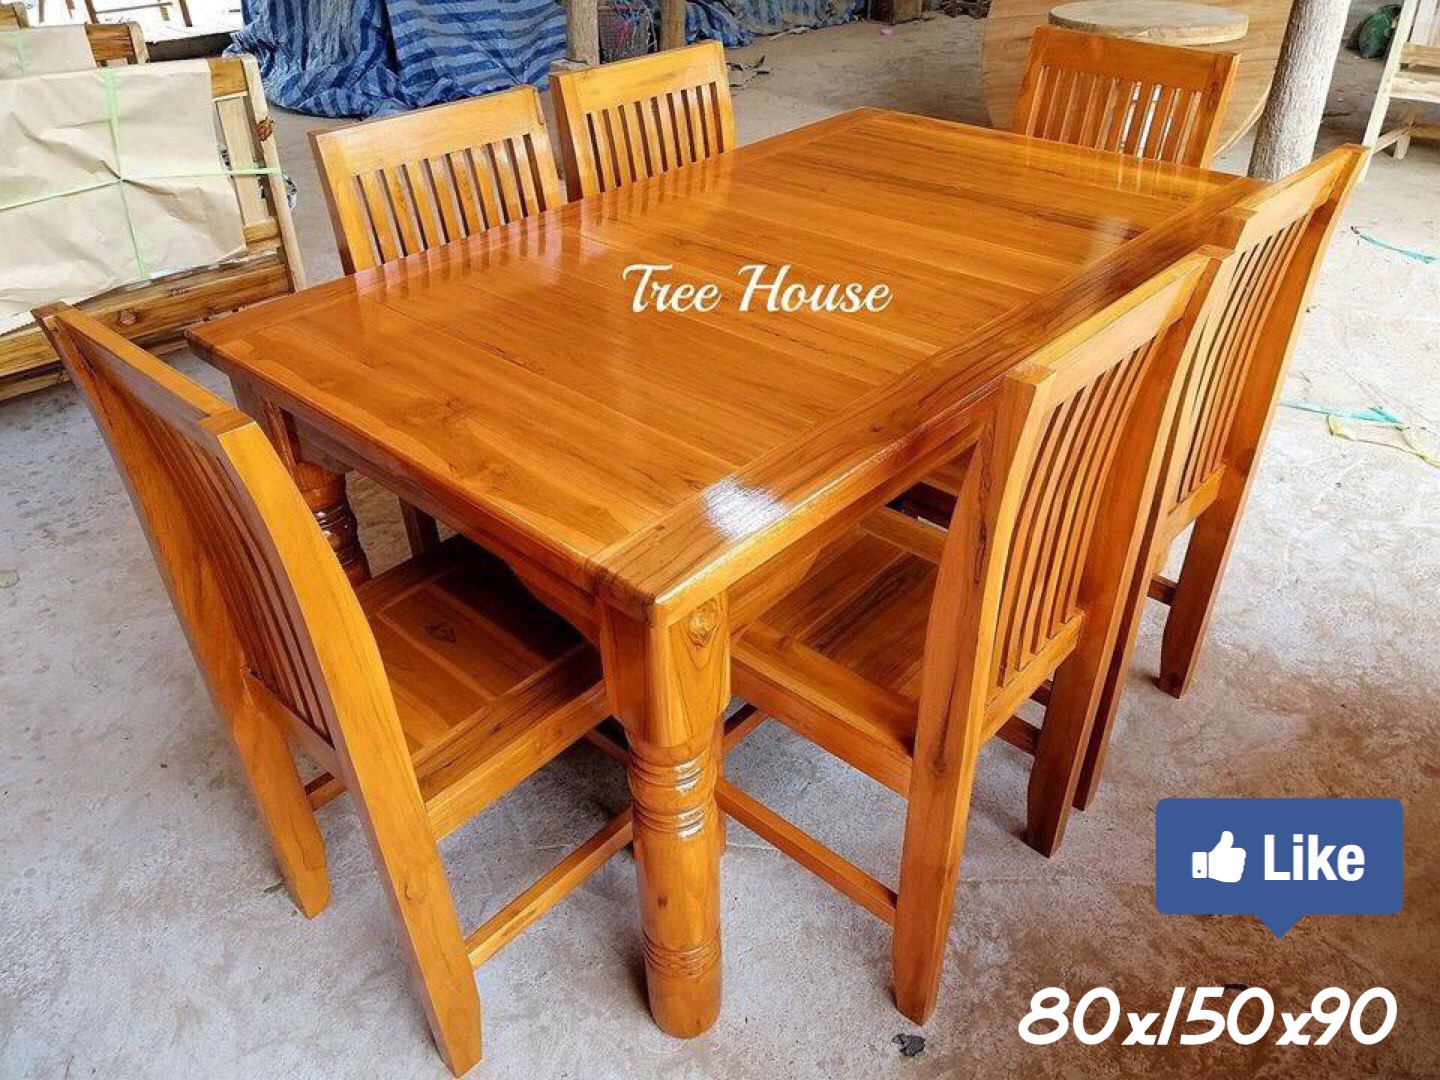 ชุด​โต๊ะ​อาหารไม้สัก 90x150x80 cm พร้อมเก้าอี้ 6 ตัว (ฟรีค่าจัดส่ง) ร้าน.Tree House เฟอร์นิเจอร์และของแต่งบ้านไม้สัก